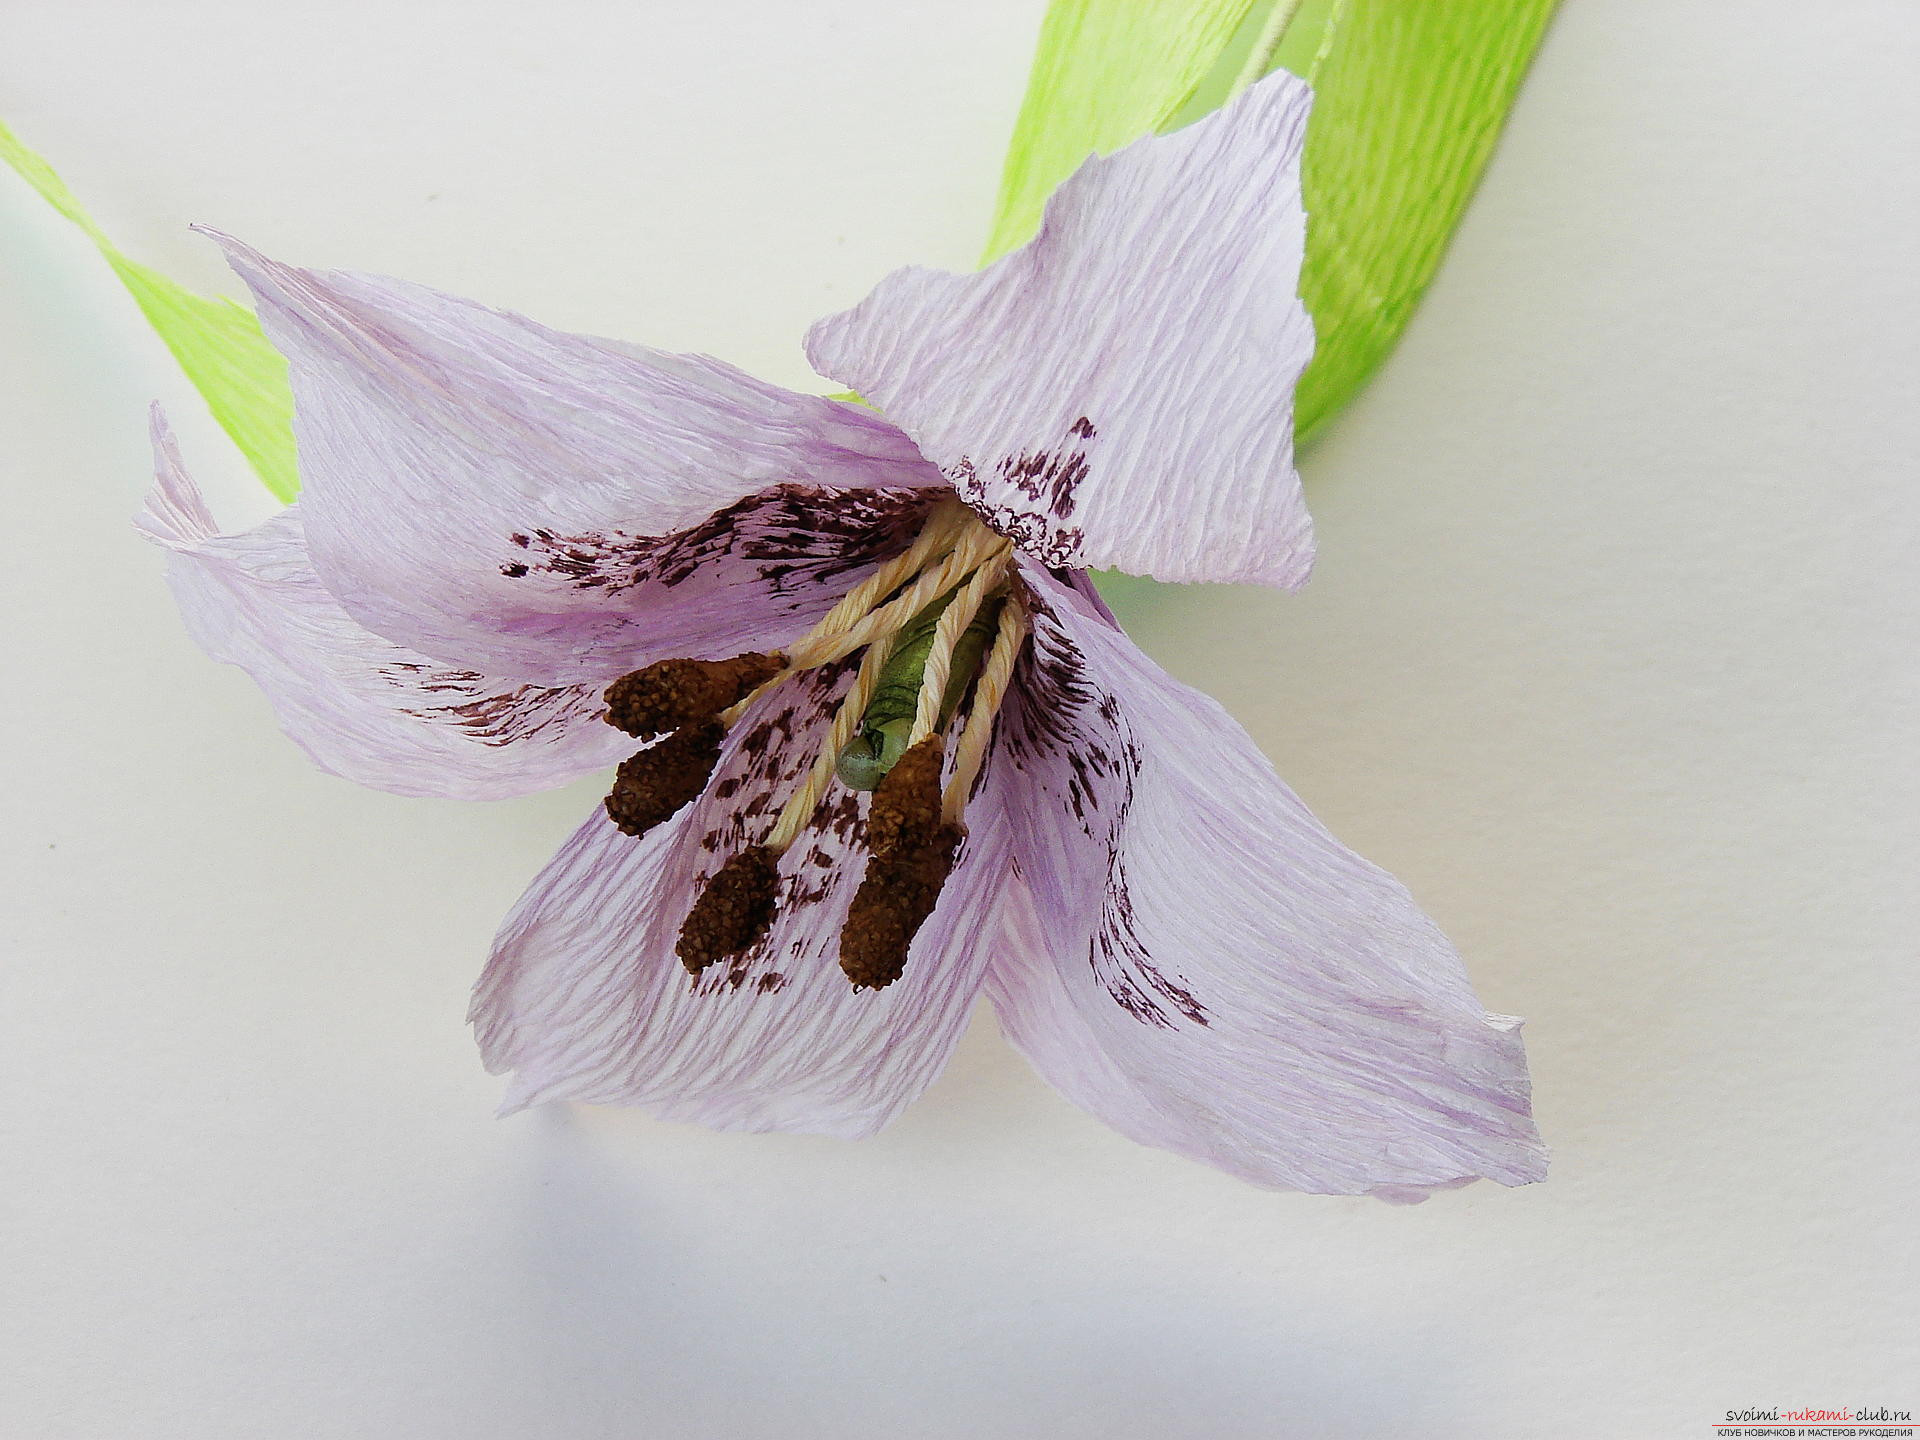 Мастер-класс научит как сделать гофрированные цветы своими руками – лилии из гофрированной бумаги.. Фото №35